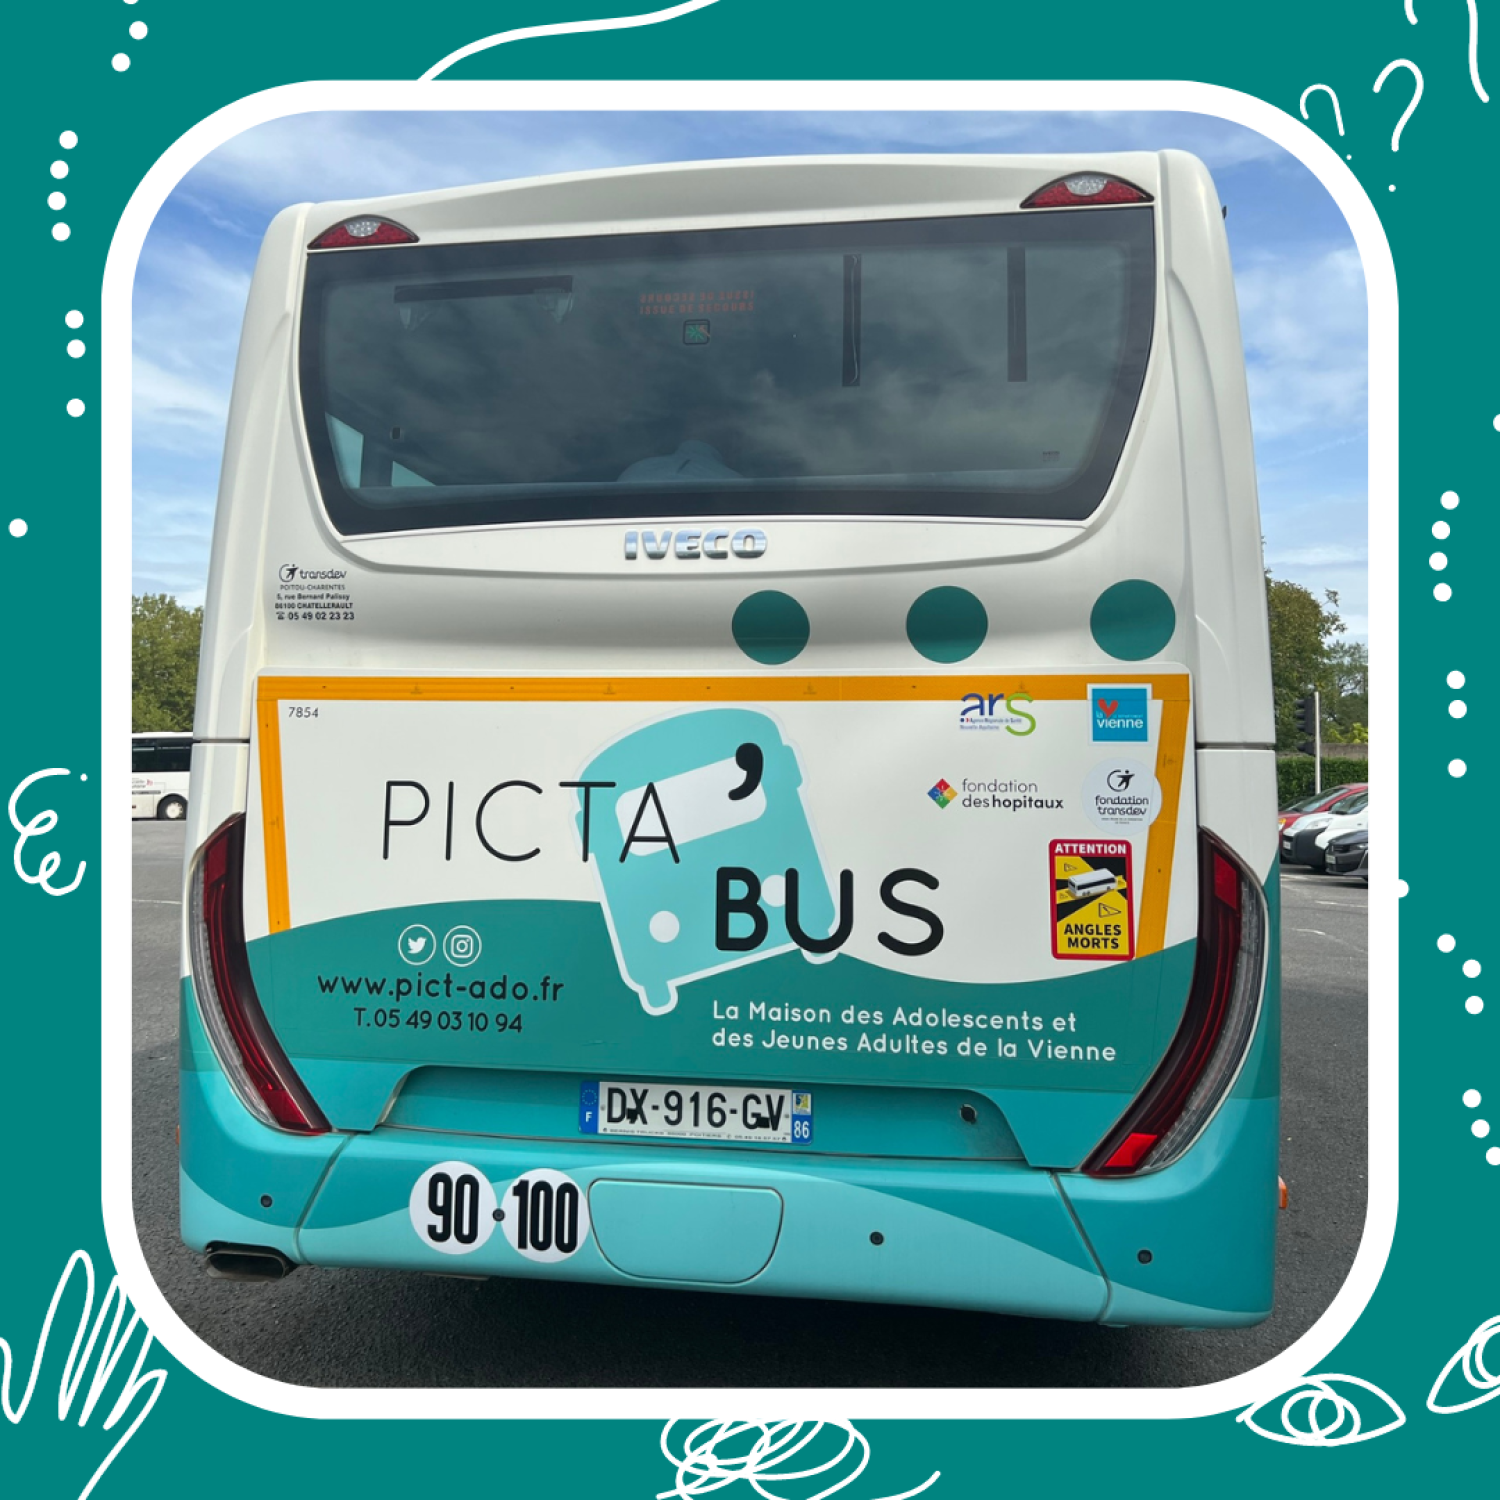 Picta&#039;Bus<br>bus, picta&#039;bus, mdaja, maison des adolescents et des jeunes adultes